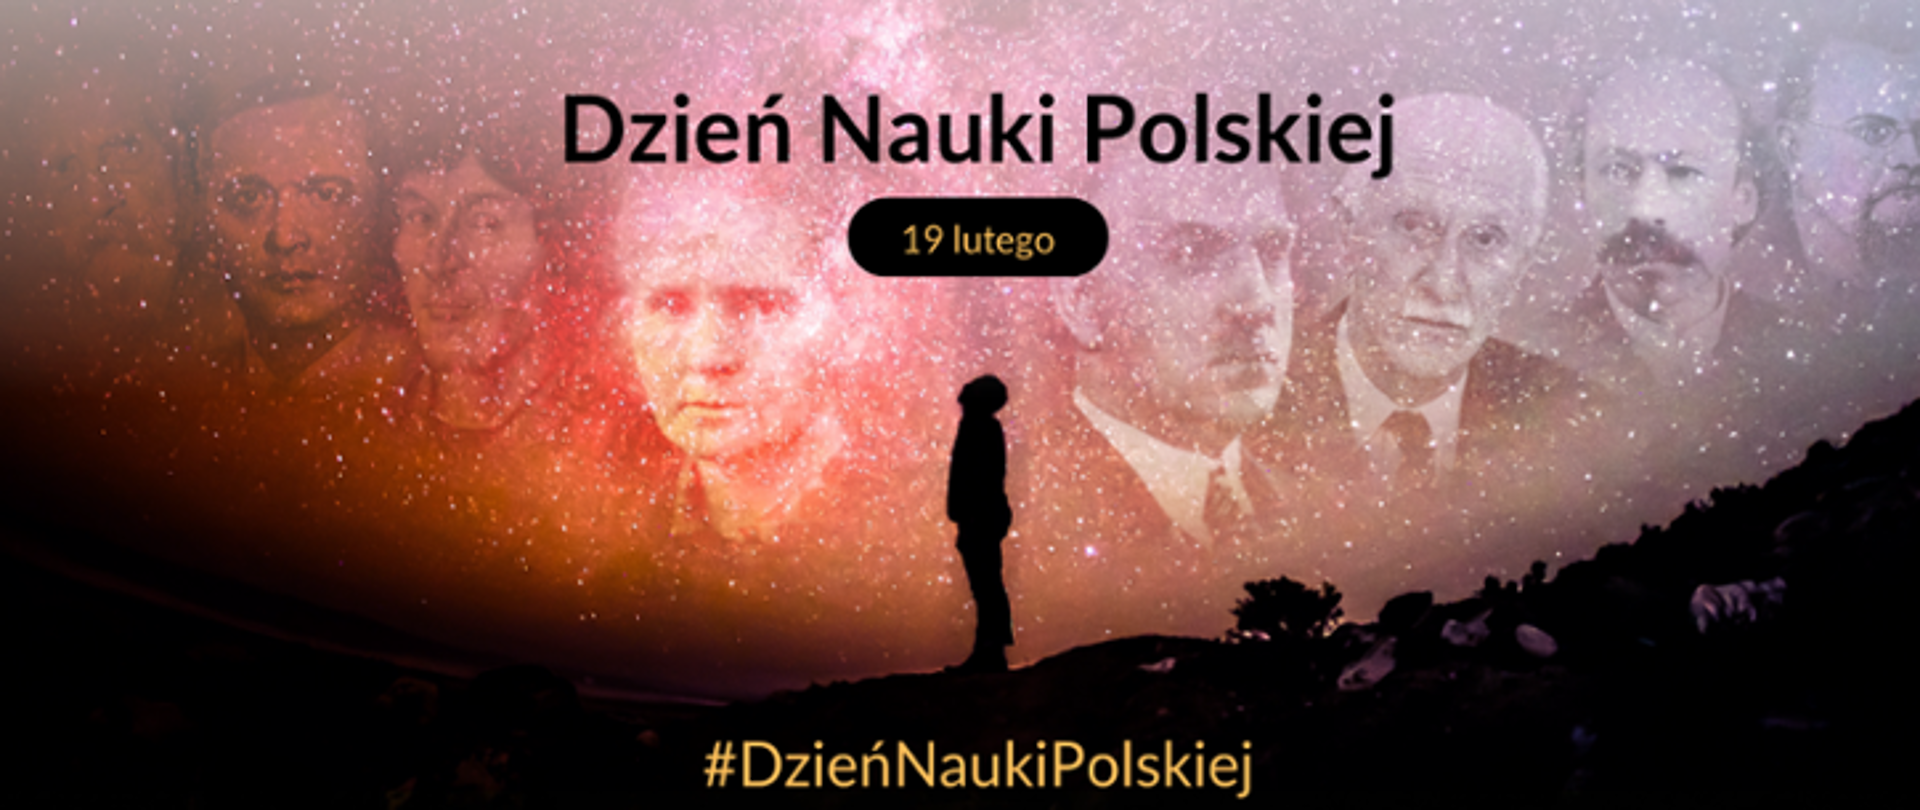 Grafika promująca wydarzenie Dzień Nauki Polskiej 19 lutego